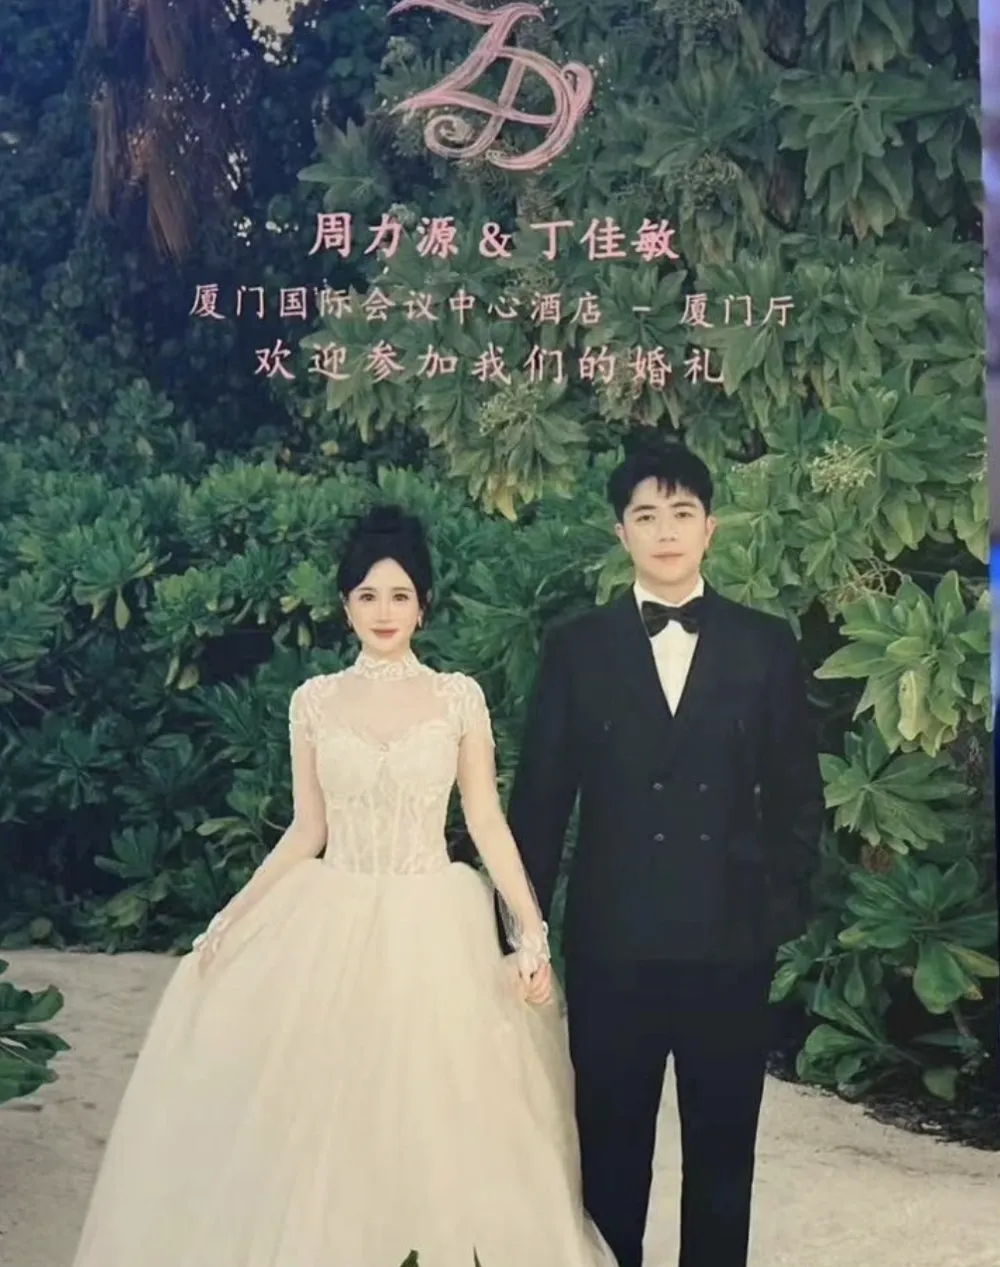 Lộ ảnh hôn lễ của 2 rich kid Trung Quốc khiến dân mạng xôn xao - 6